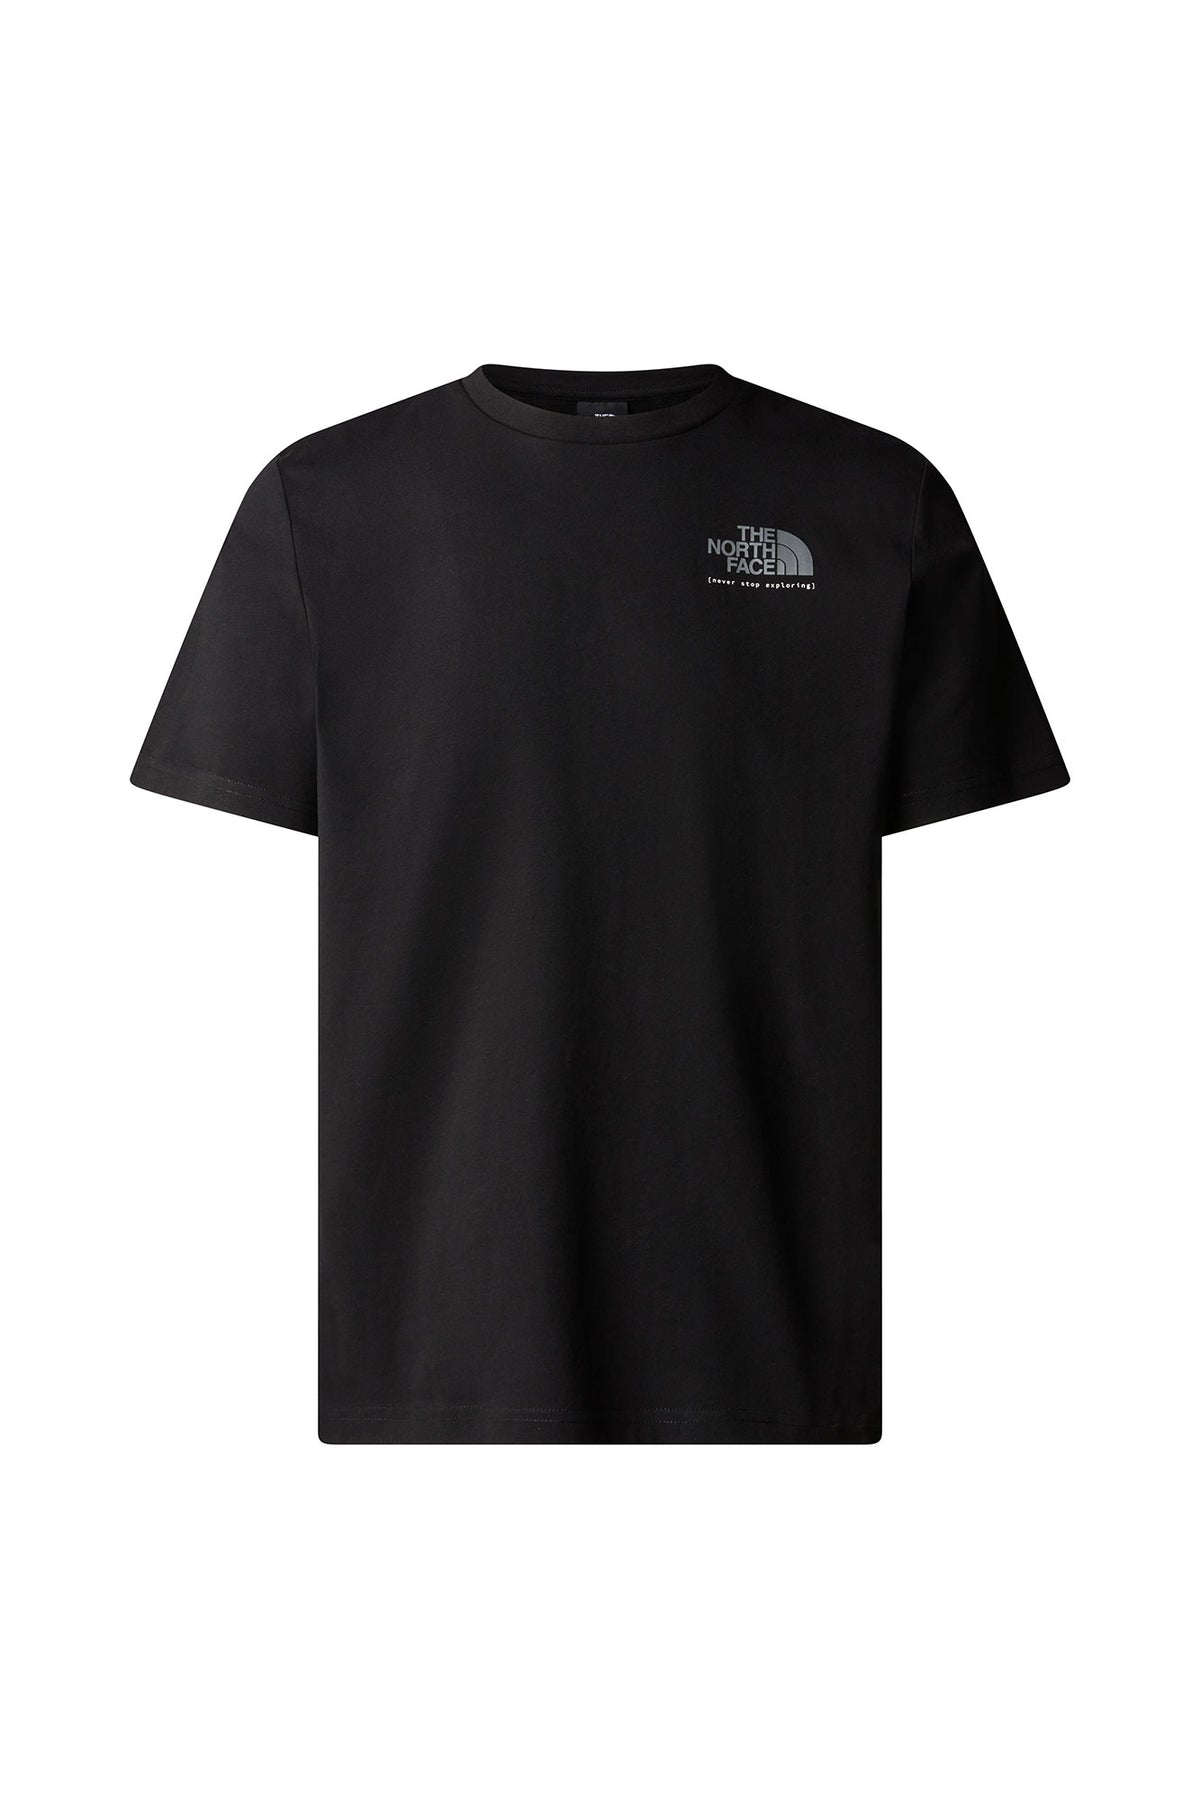 דה נורת' פייס חולצת טישירט Graphic בצבע שחור לגברים-The North Face-XS-נאקו